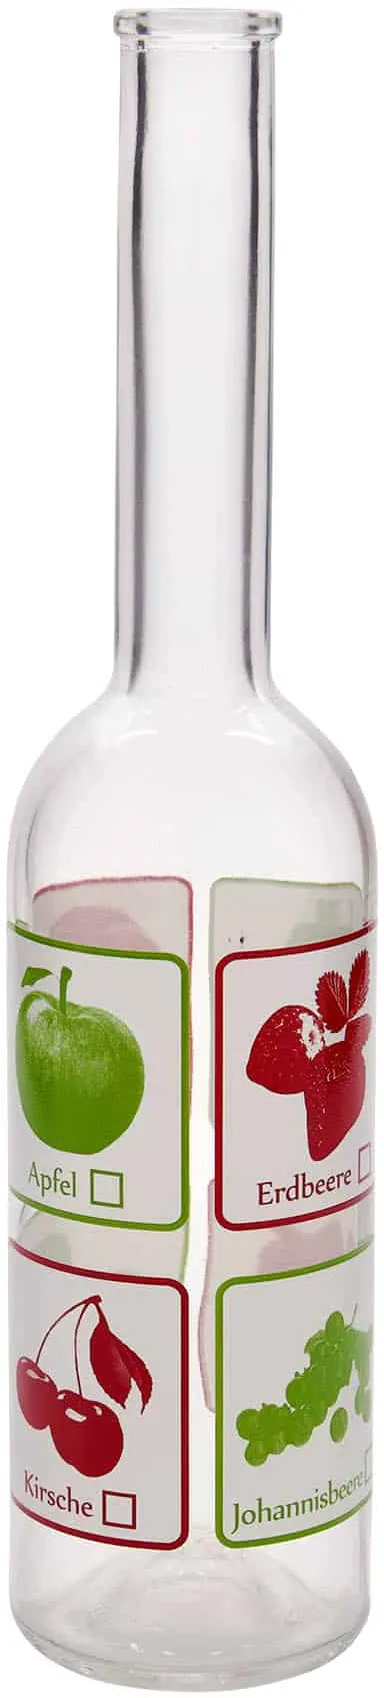 Glazen fles 'Opera', 500 ml, motief: Vruchten, monding: kurk